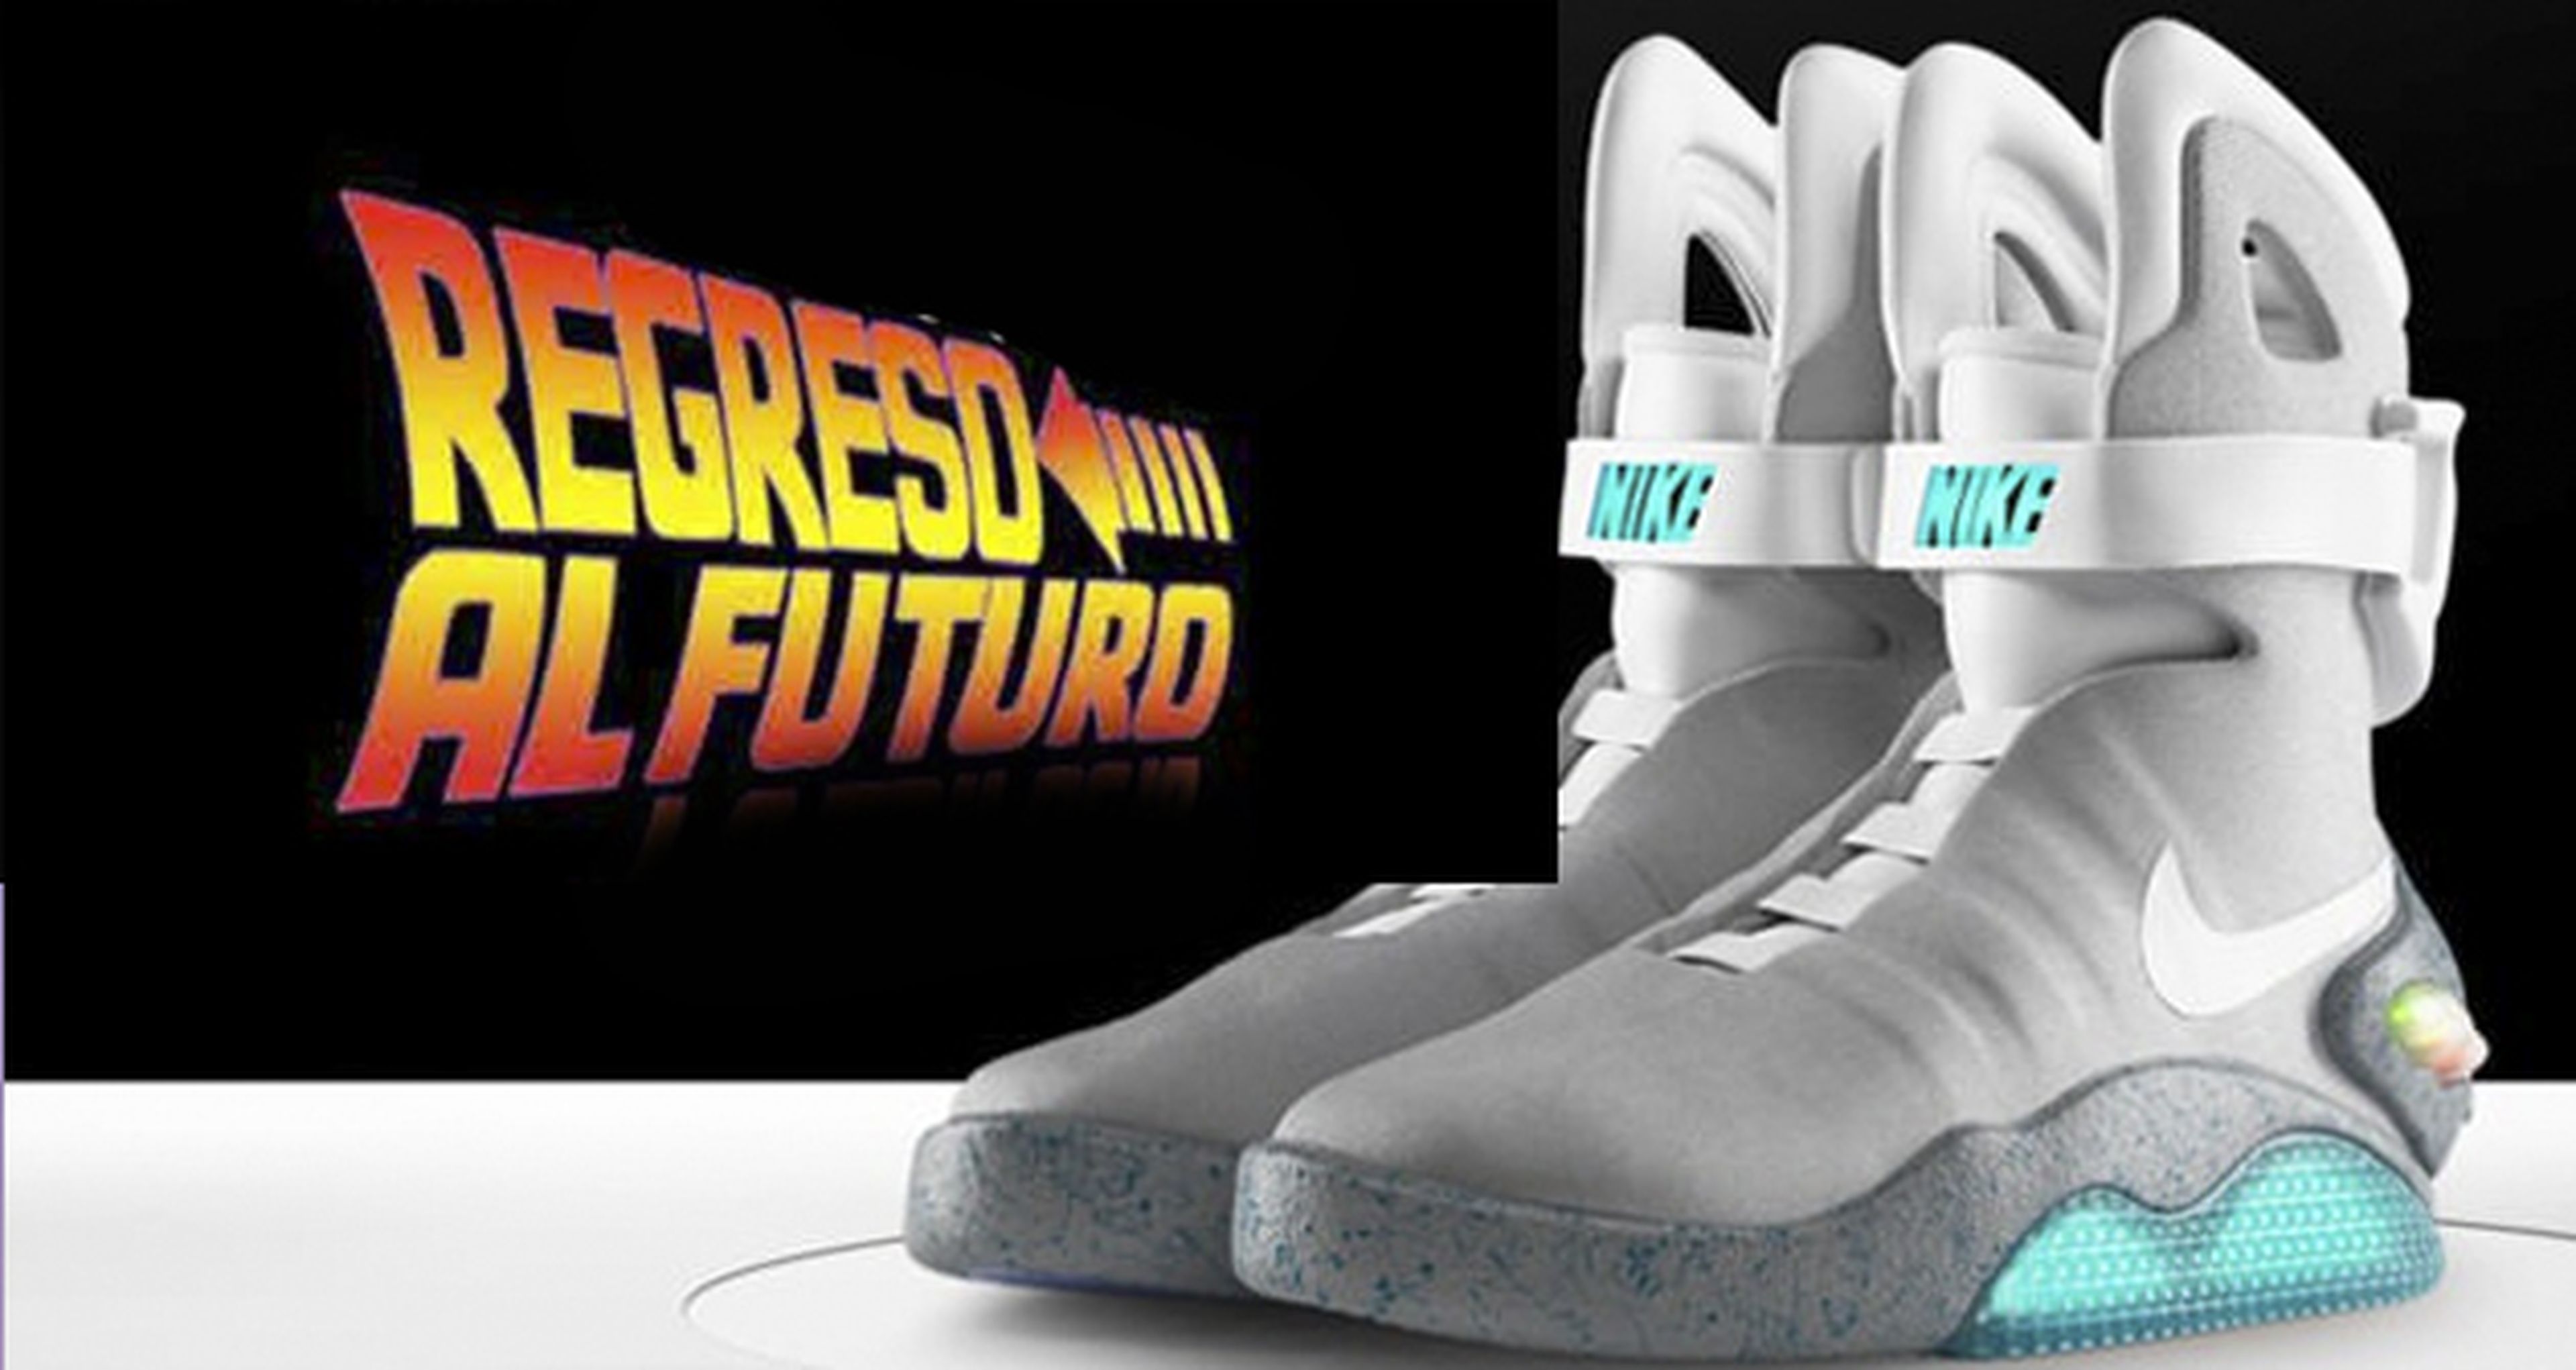 Regreso al futuro: Michael J. Fox se prueba las Nike Air que salen a venta 2016 | Hobby Consolas